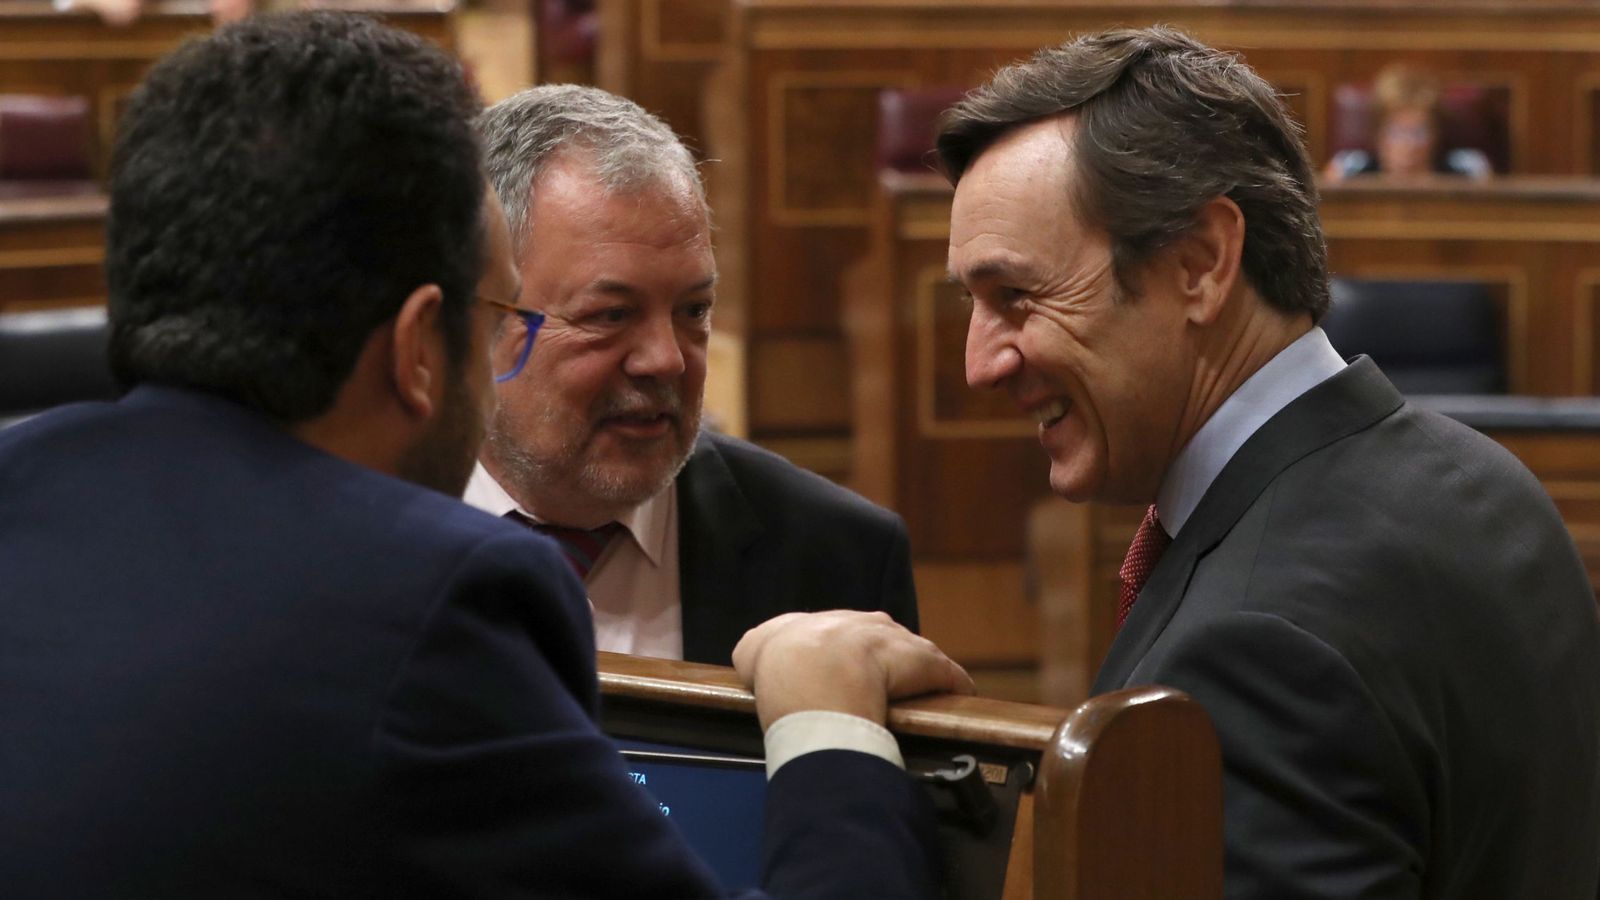 Foto: Los portavoces del PP y del PSOE en el Congreso, Rafael Hernando (d), y Antonio Hernando, conversan en presencia del diputado del PNV Pedro Azpiazu durante el pleno. (EFE)